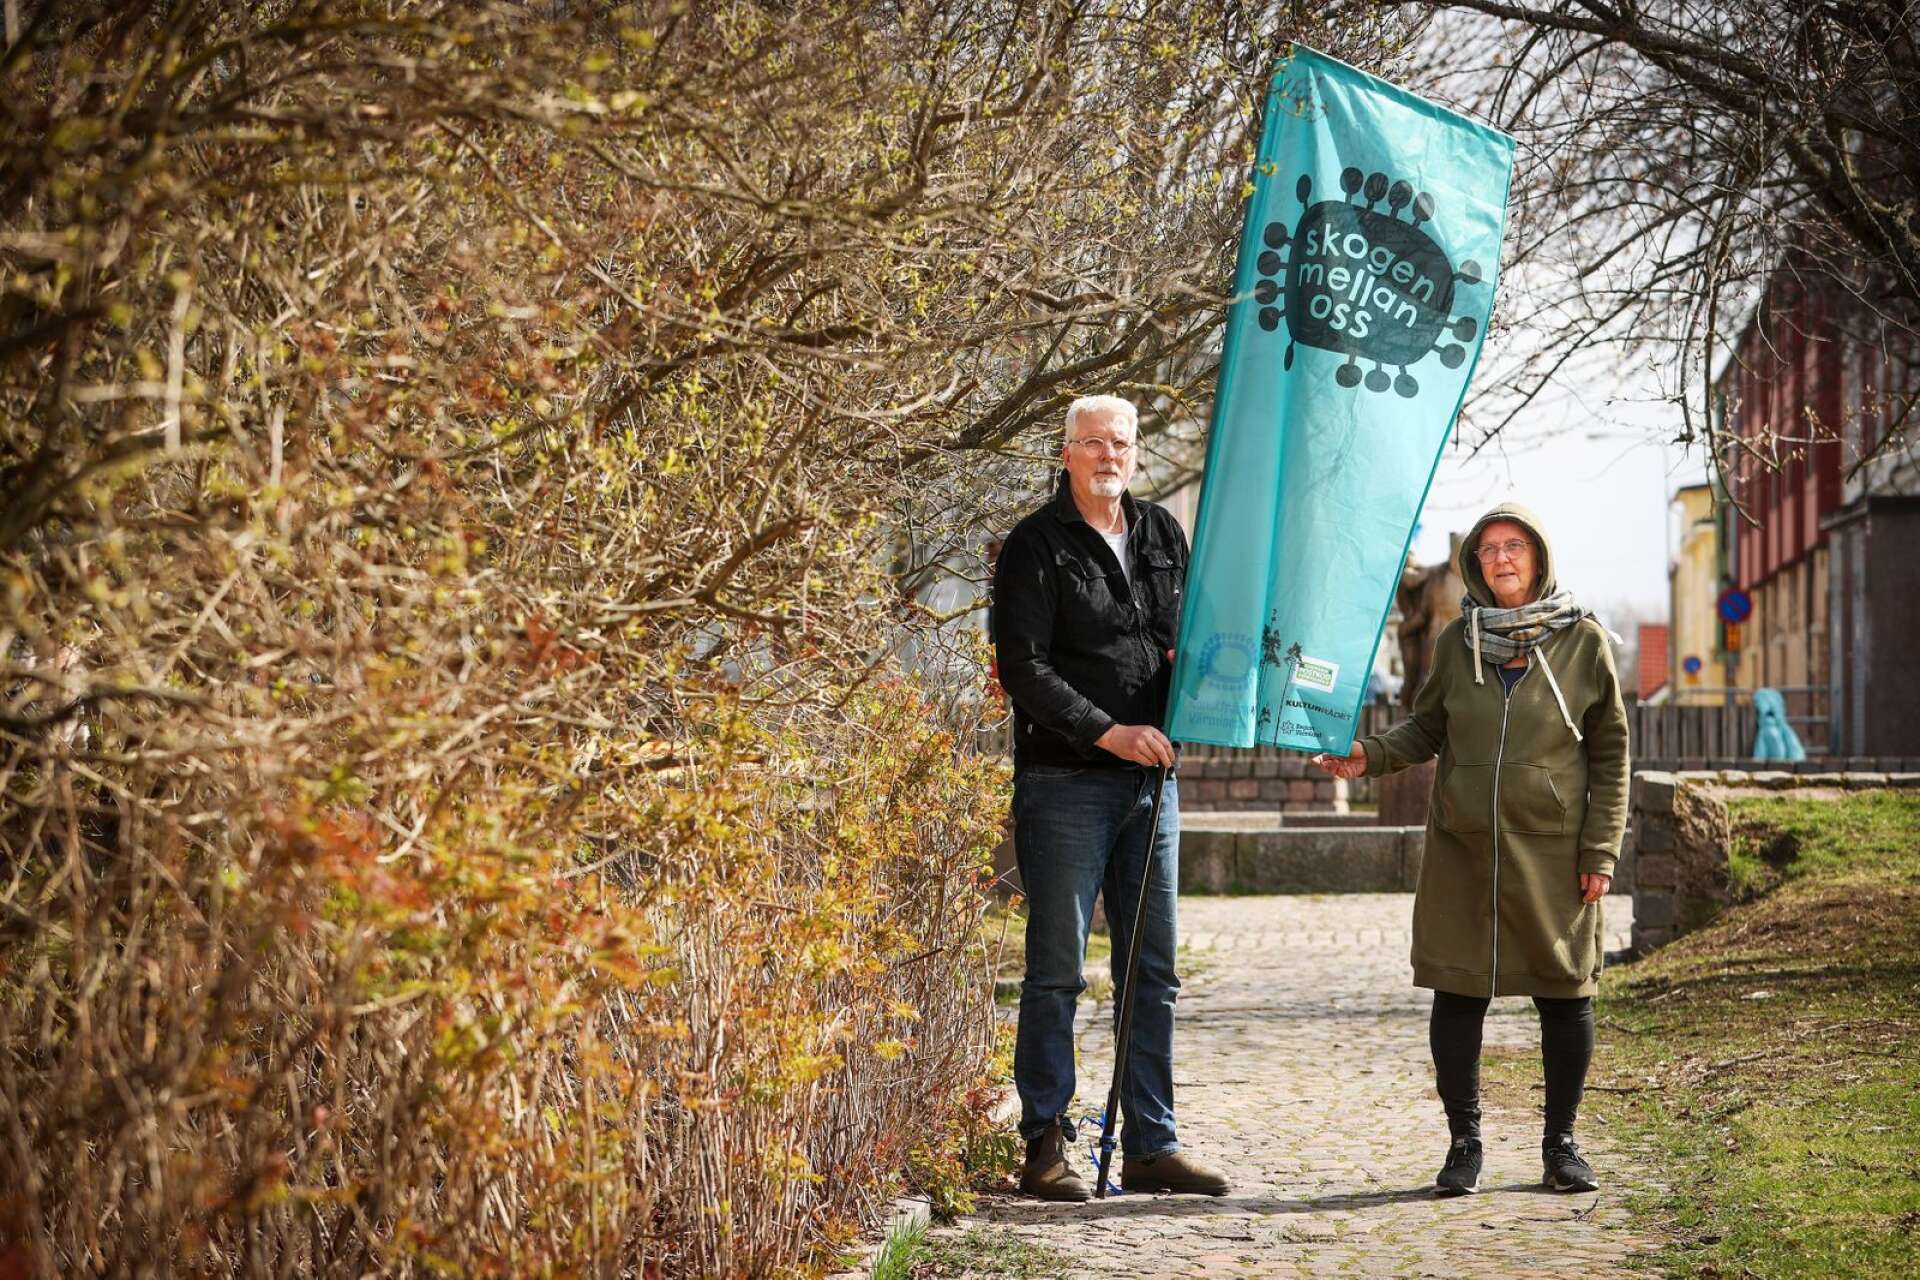 Janove Ekstedt och Anne Sundkvist på Konstfrämjandet är mitt i projektet Skogen mellan oss, som redan syns på Herrhagen men i sommar också kommer att vara igång i Brunsberg, Arvika.